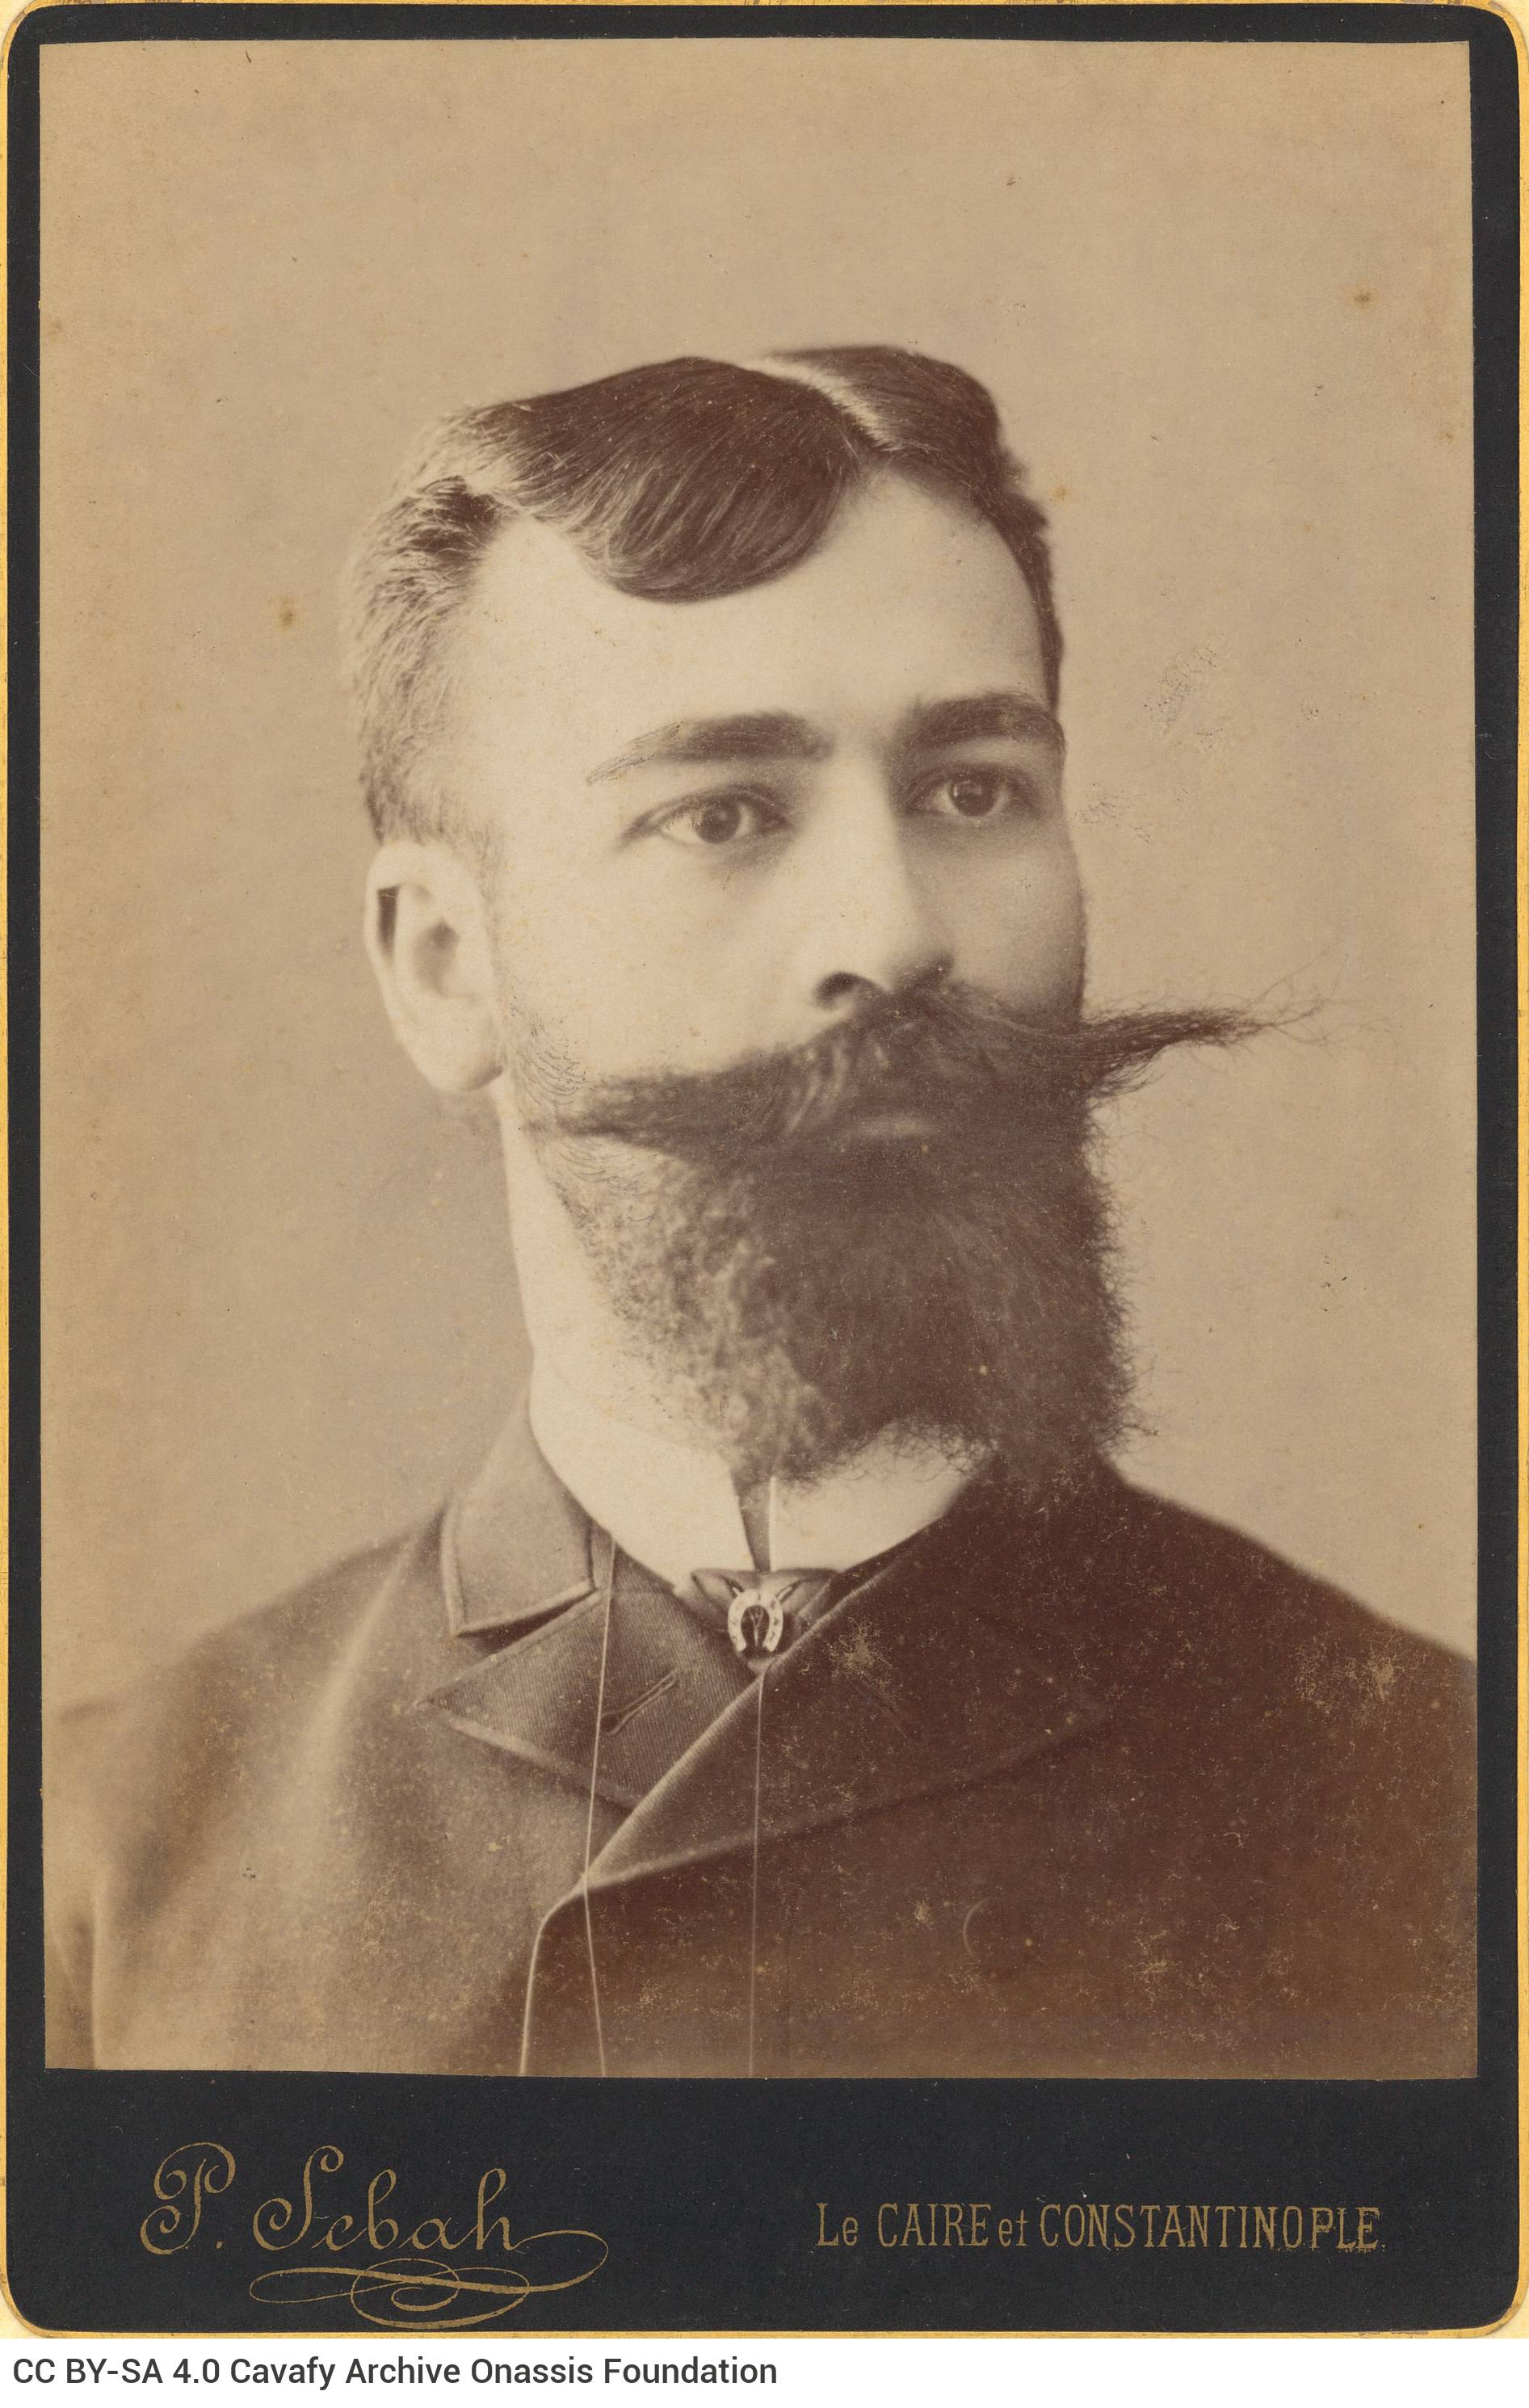 Φωτογραφικό πορτρέτο νέου άνδρα με μεγάλο μουστάκι και γενειάδα. Ο λ